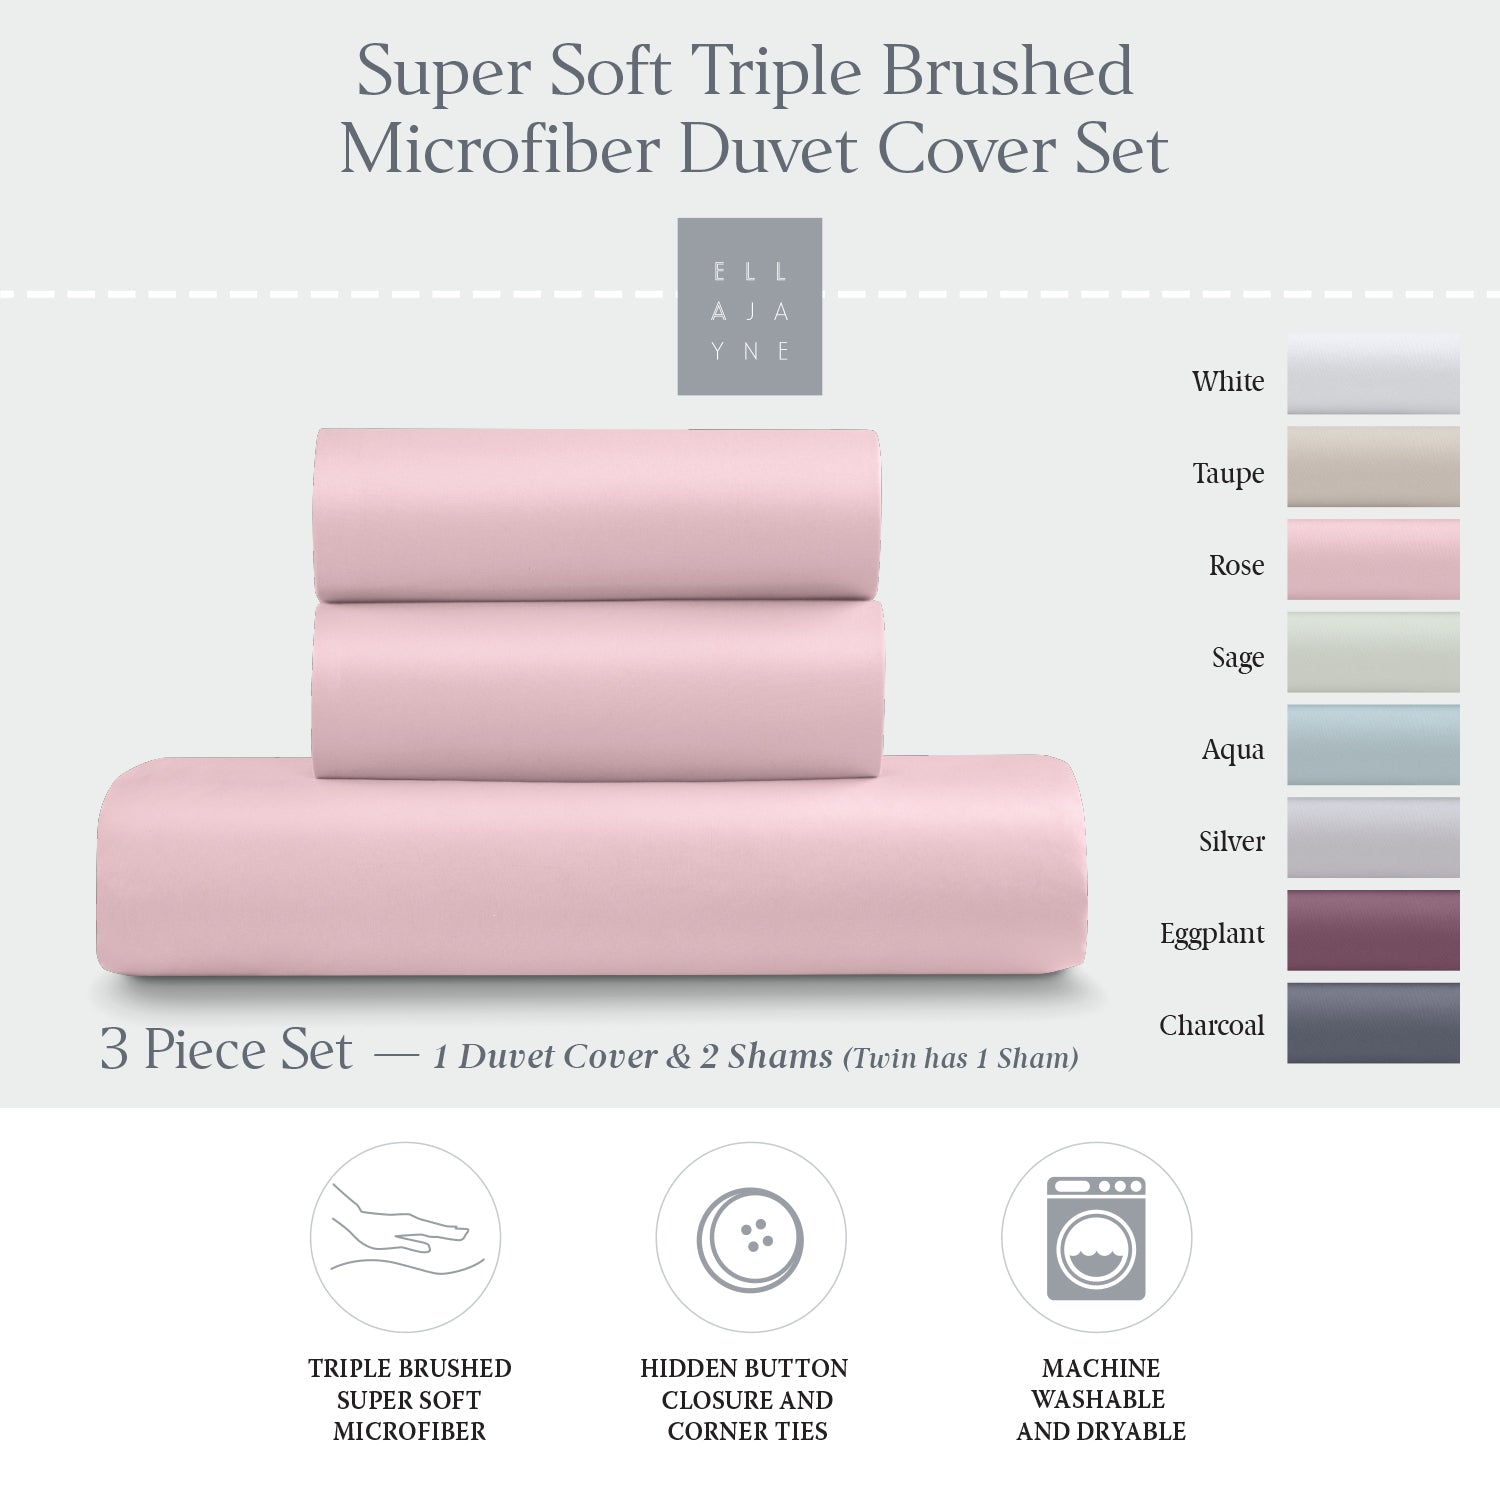 Super Soft Triple Brushed Microfiber Duvet Cover Set